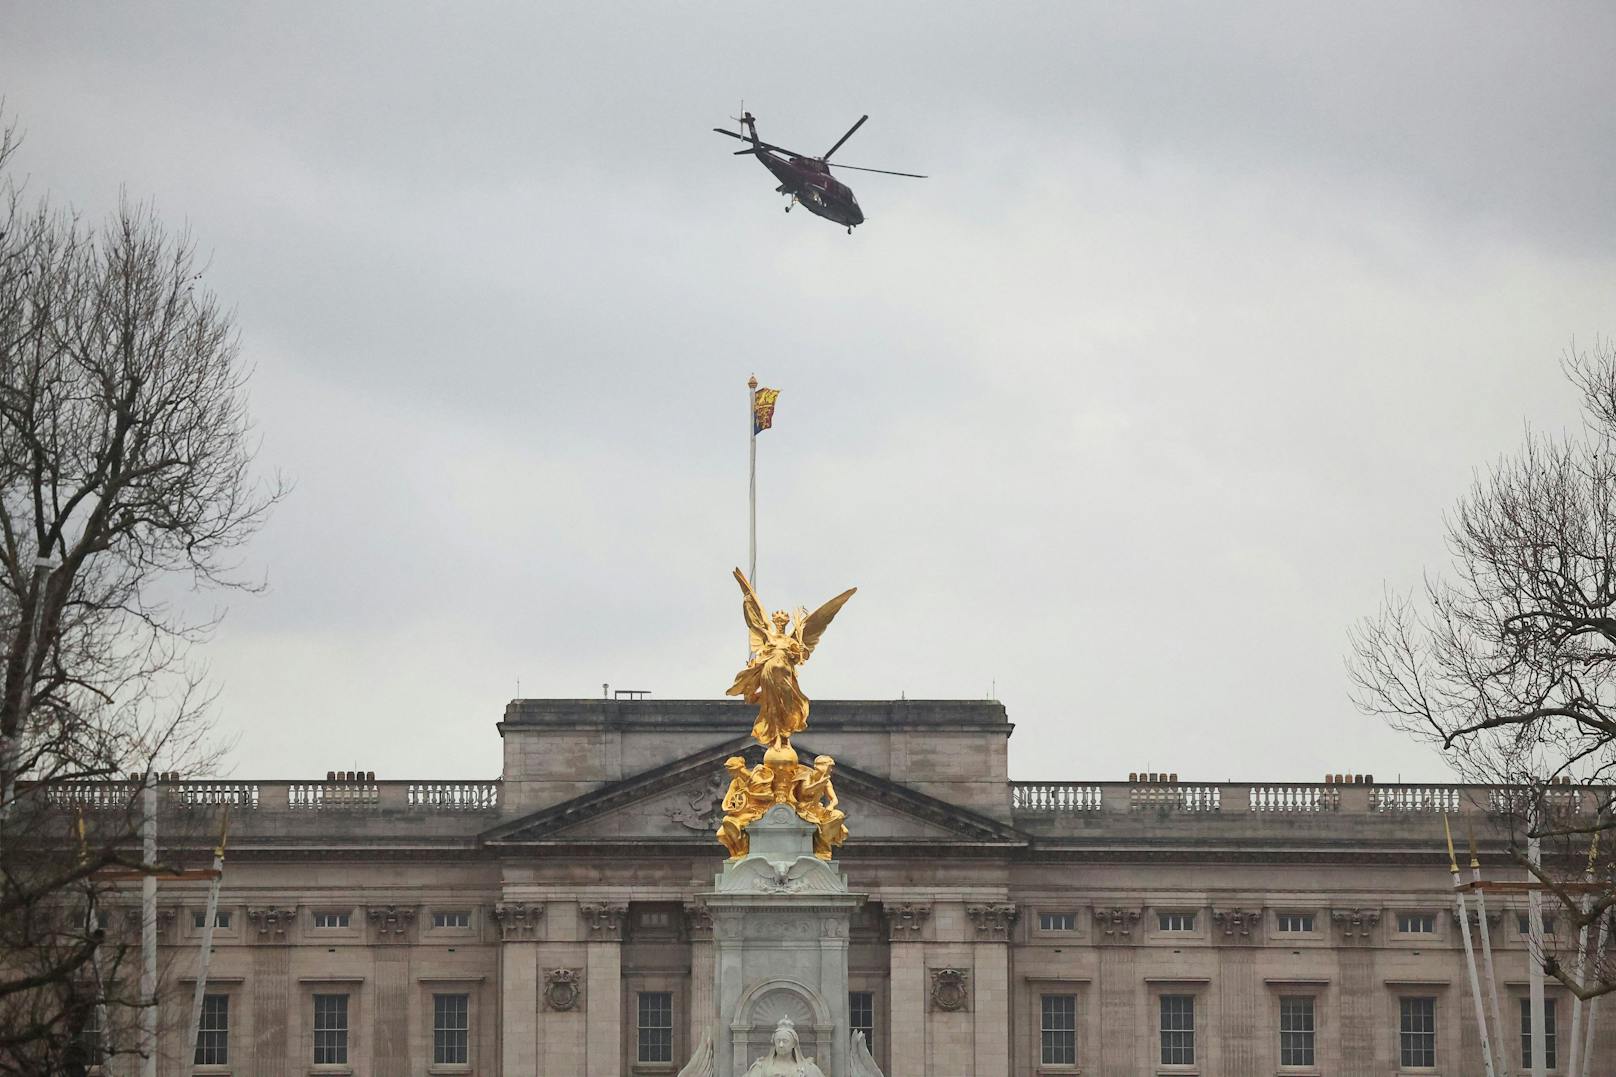 In der letzten Stunde ist auch ein Hubschrauber im Garten des Buckingham Palace gelandet. Es ist noch nicht bekannt, wer an Bord ist oder was der Zweck der Landung des Hubschraubers ist.